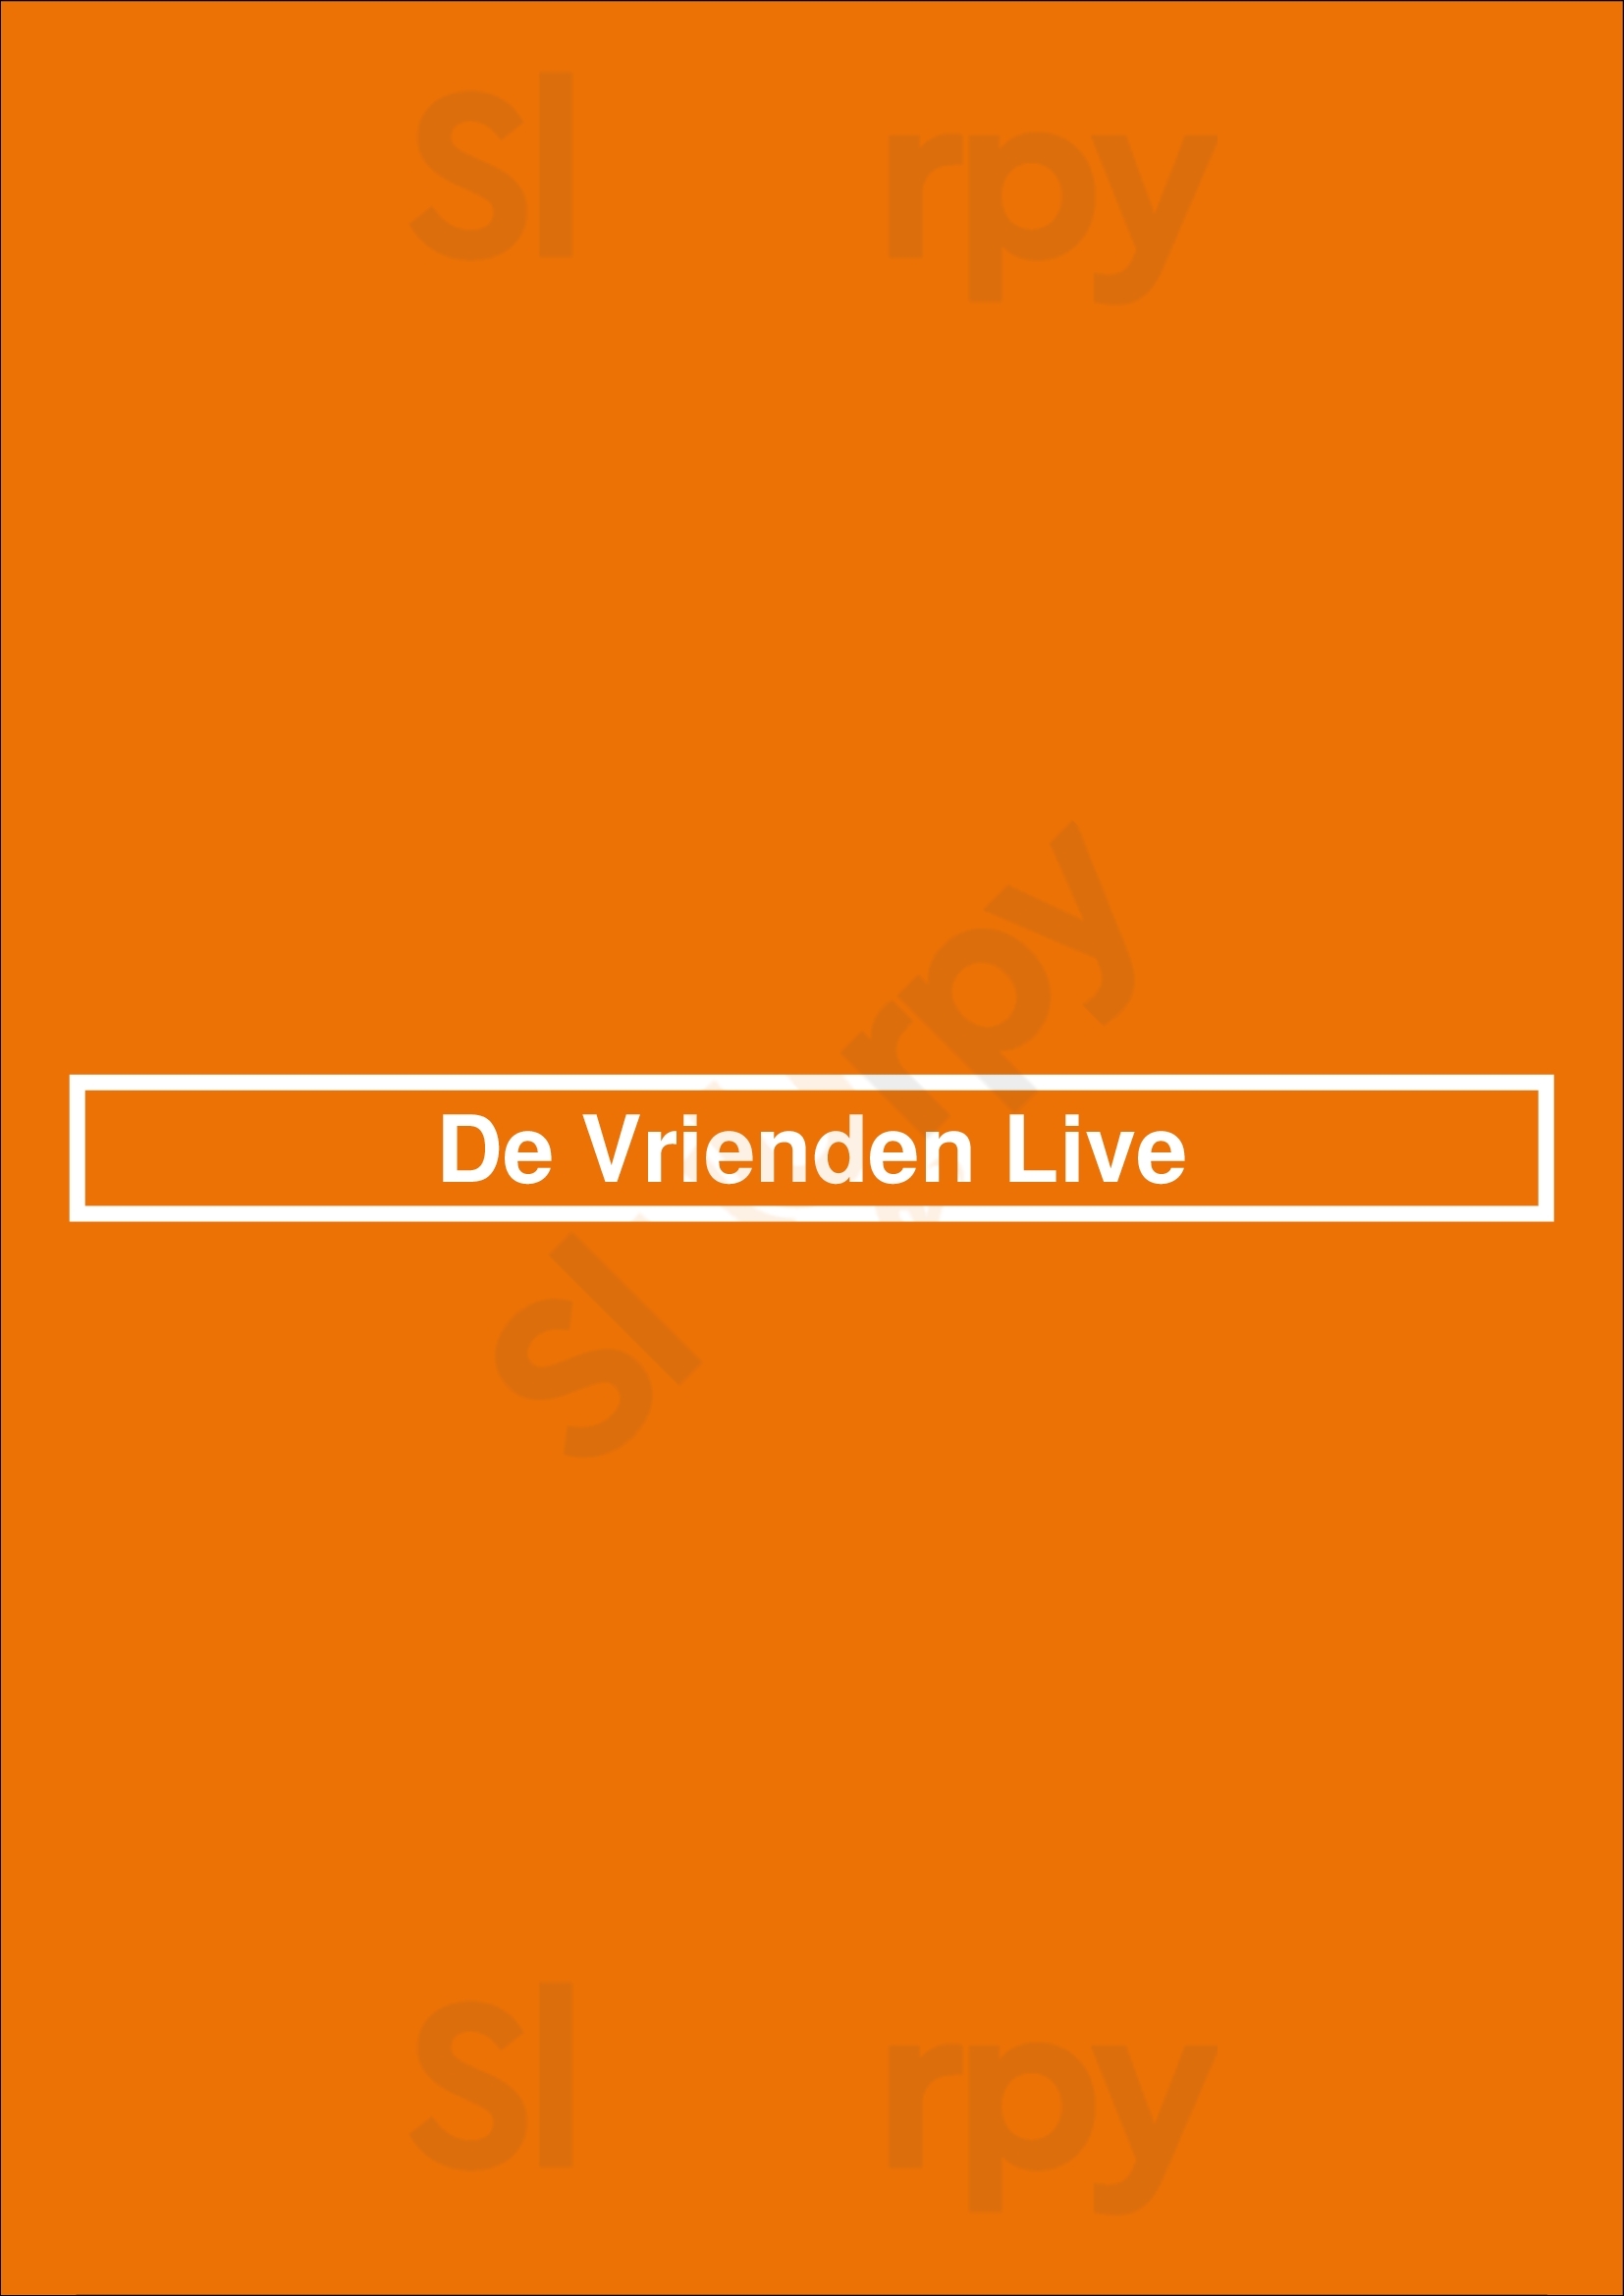 De Vrienden Live Rotterdam Menu - 1